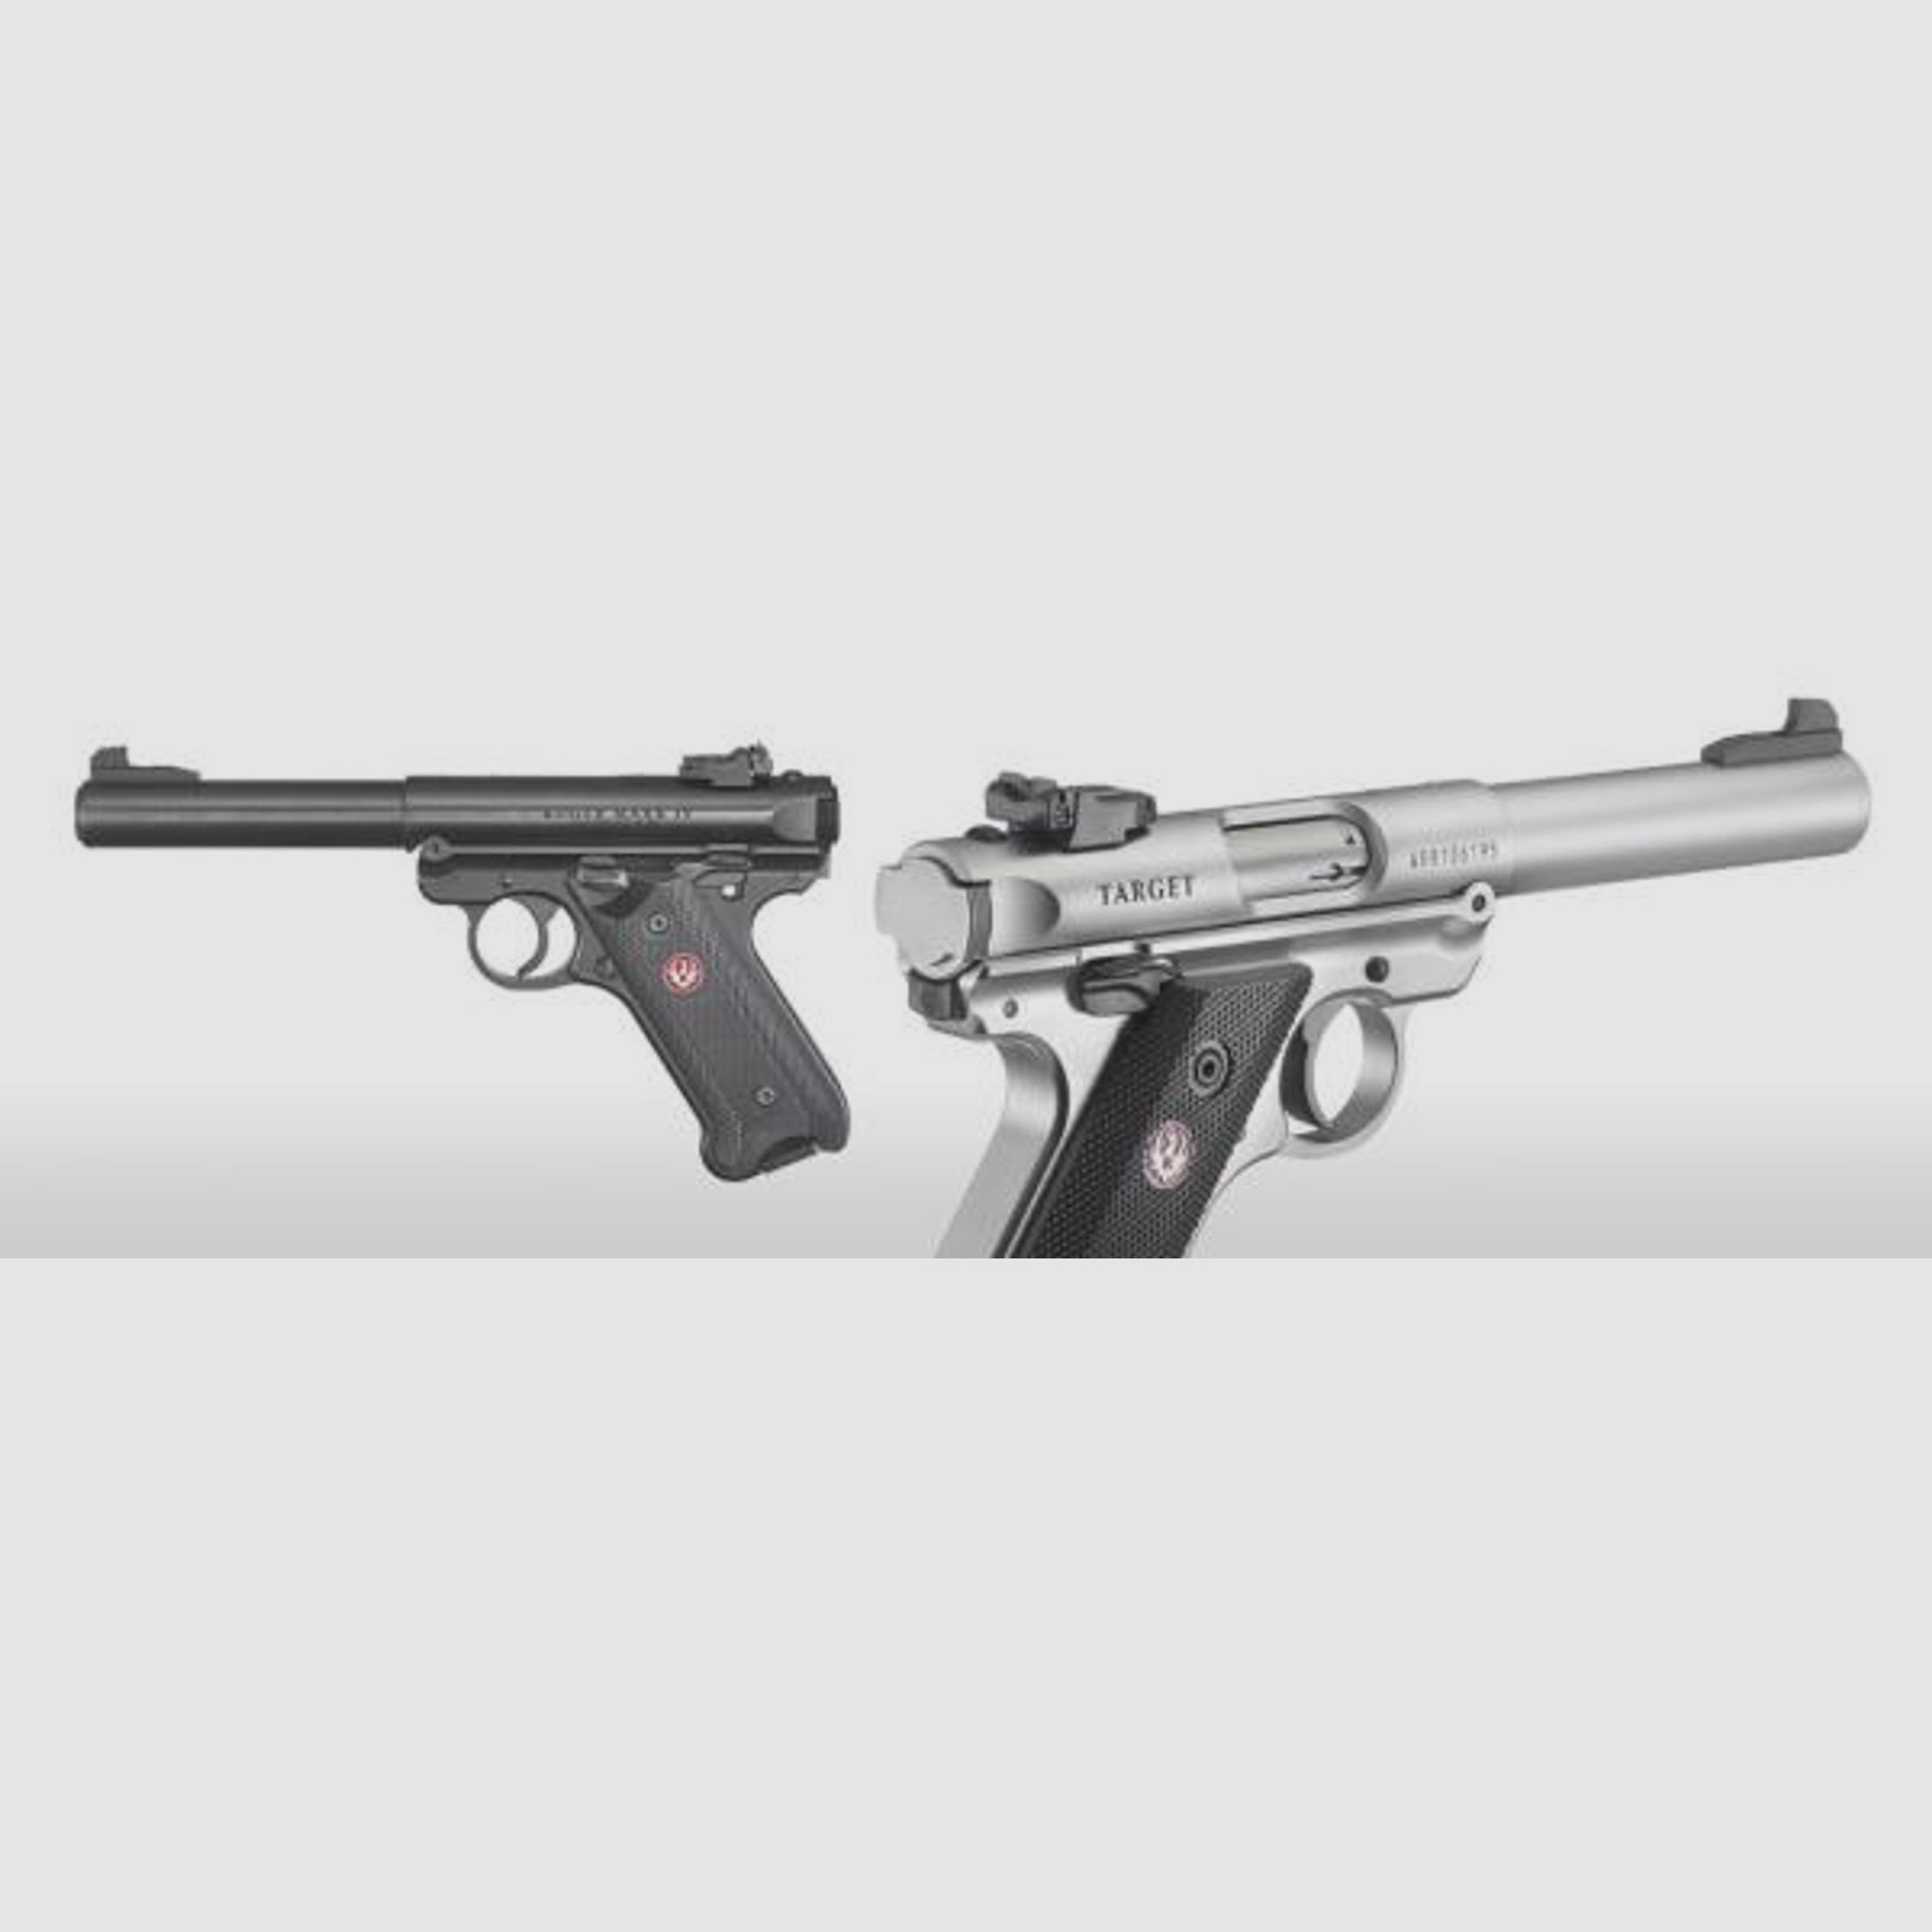 RUGER KK-Pistole Mod. Mark IV Target -5,5' sts .22lr    stainless